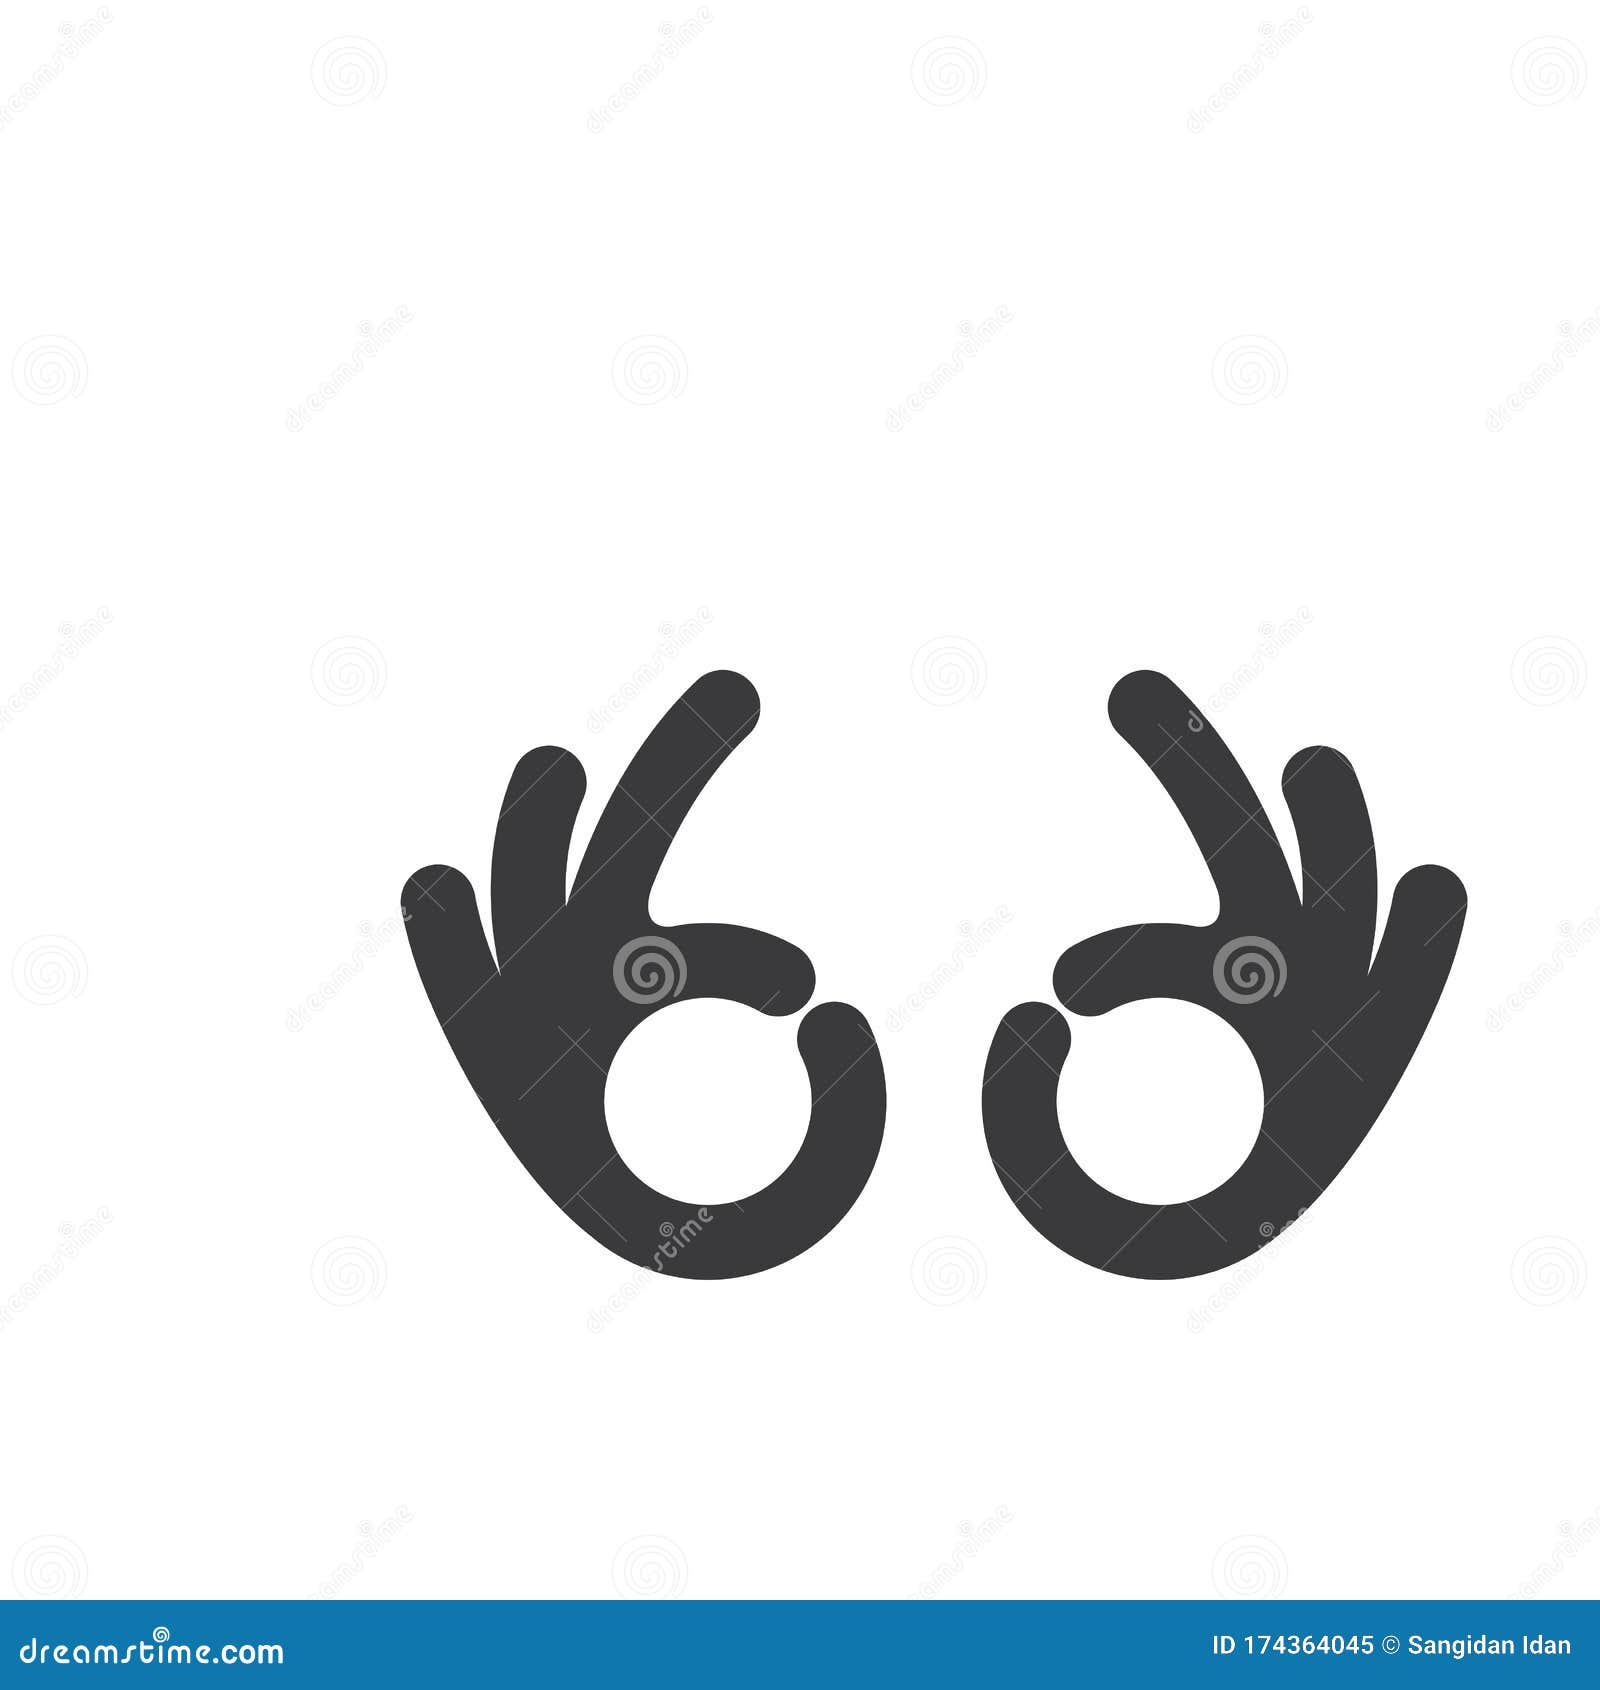 ok hand gesture  icon   